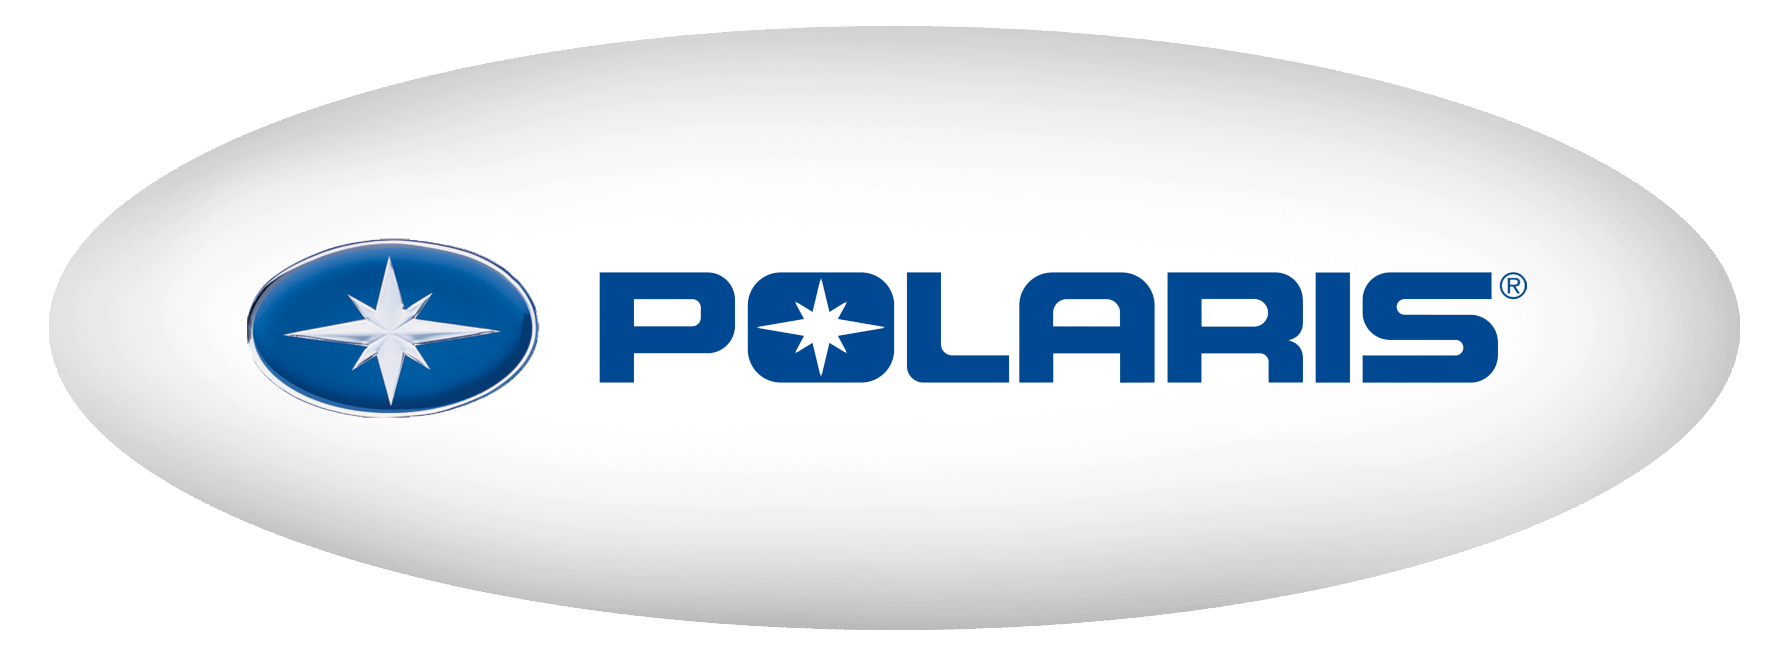 The 100 Polaris Logo - Polaris YAMAHA OF LOUISVILLE LOUISVILLE, KY (502) 254-1188